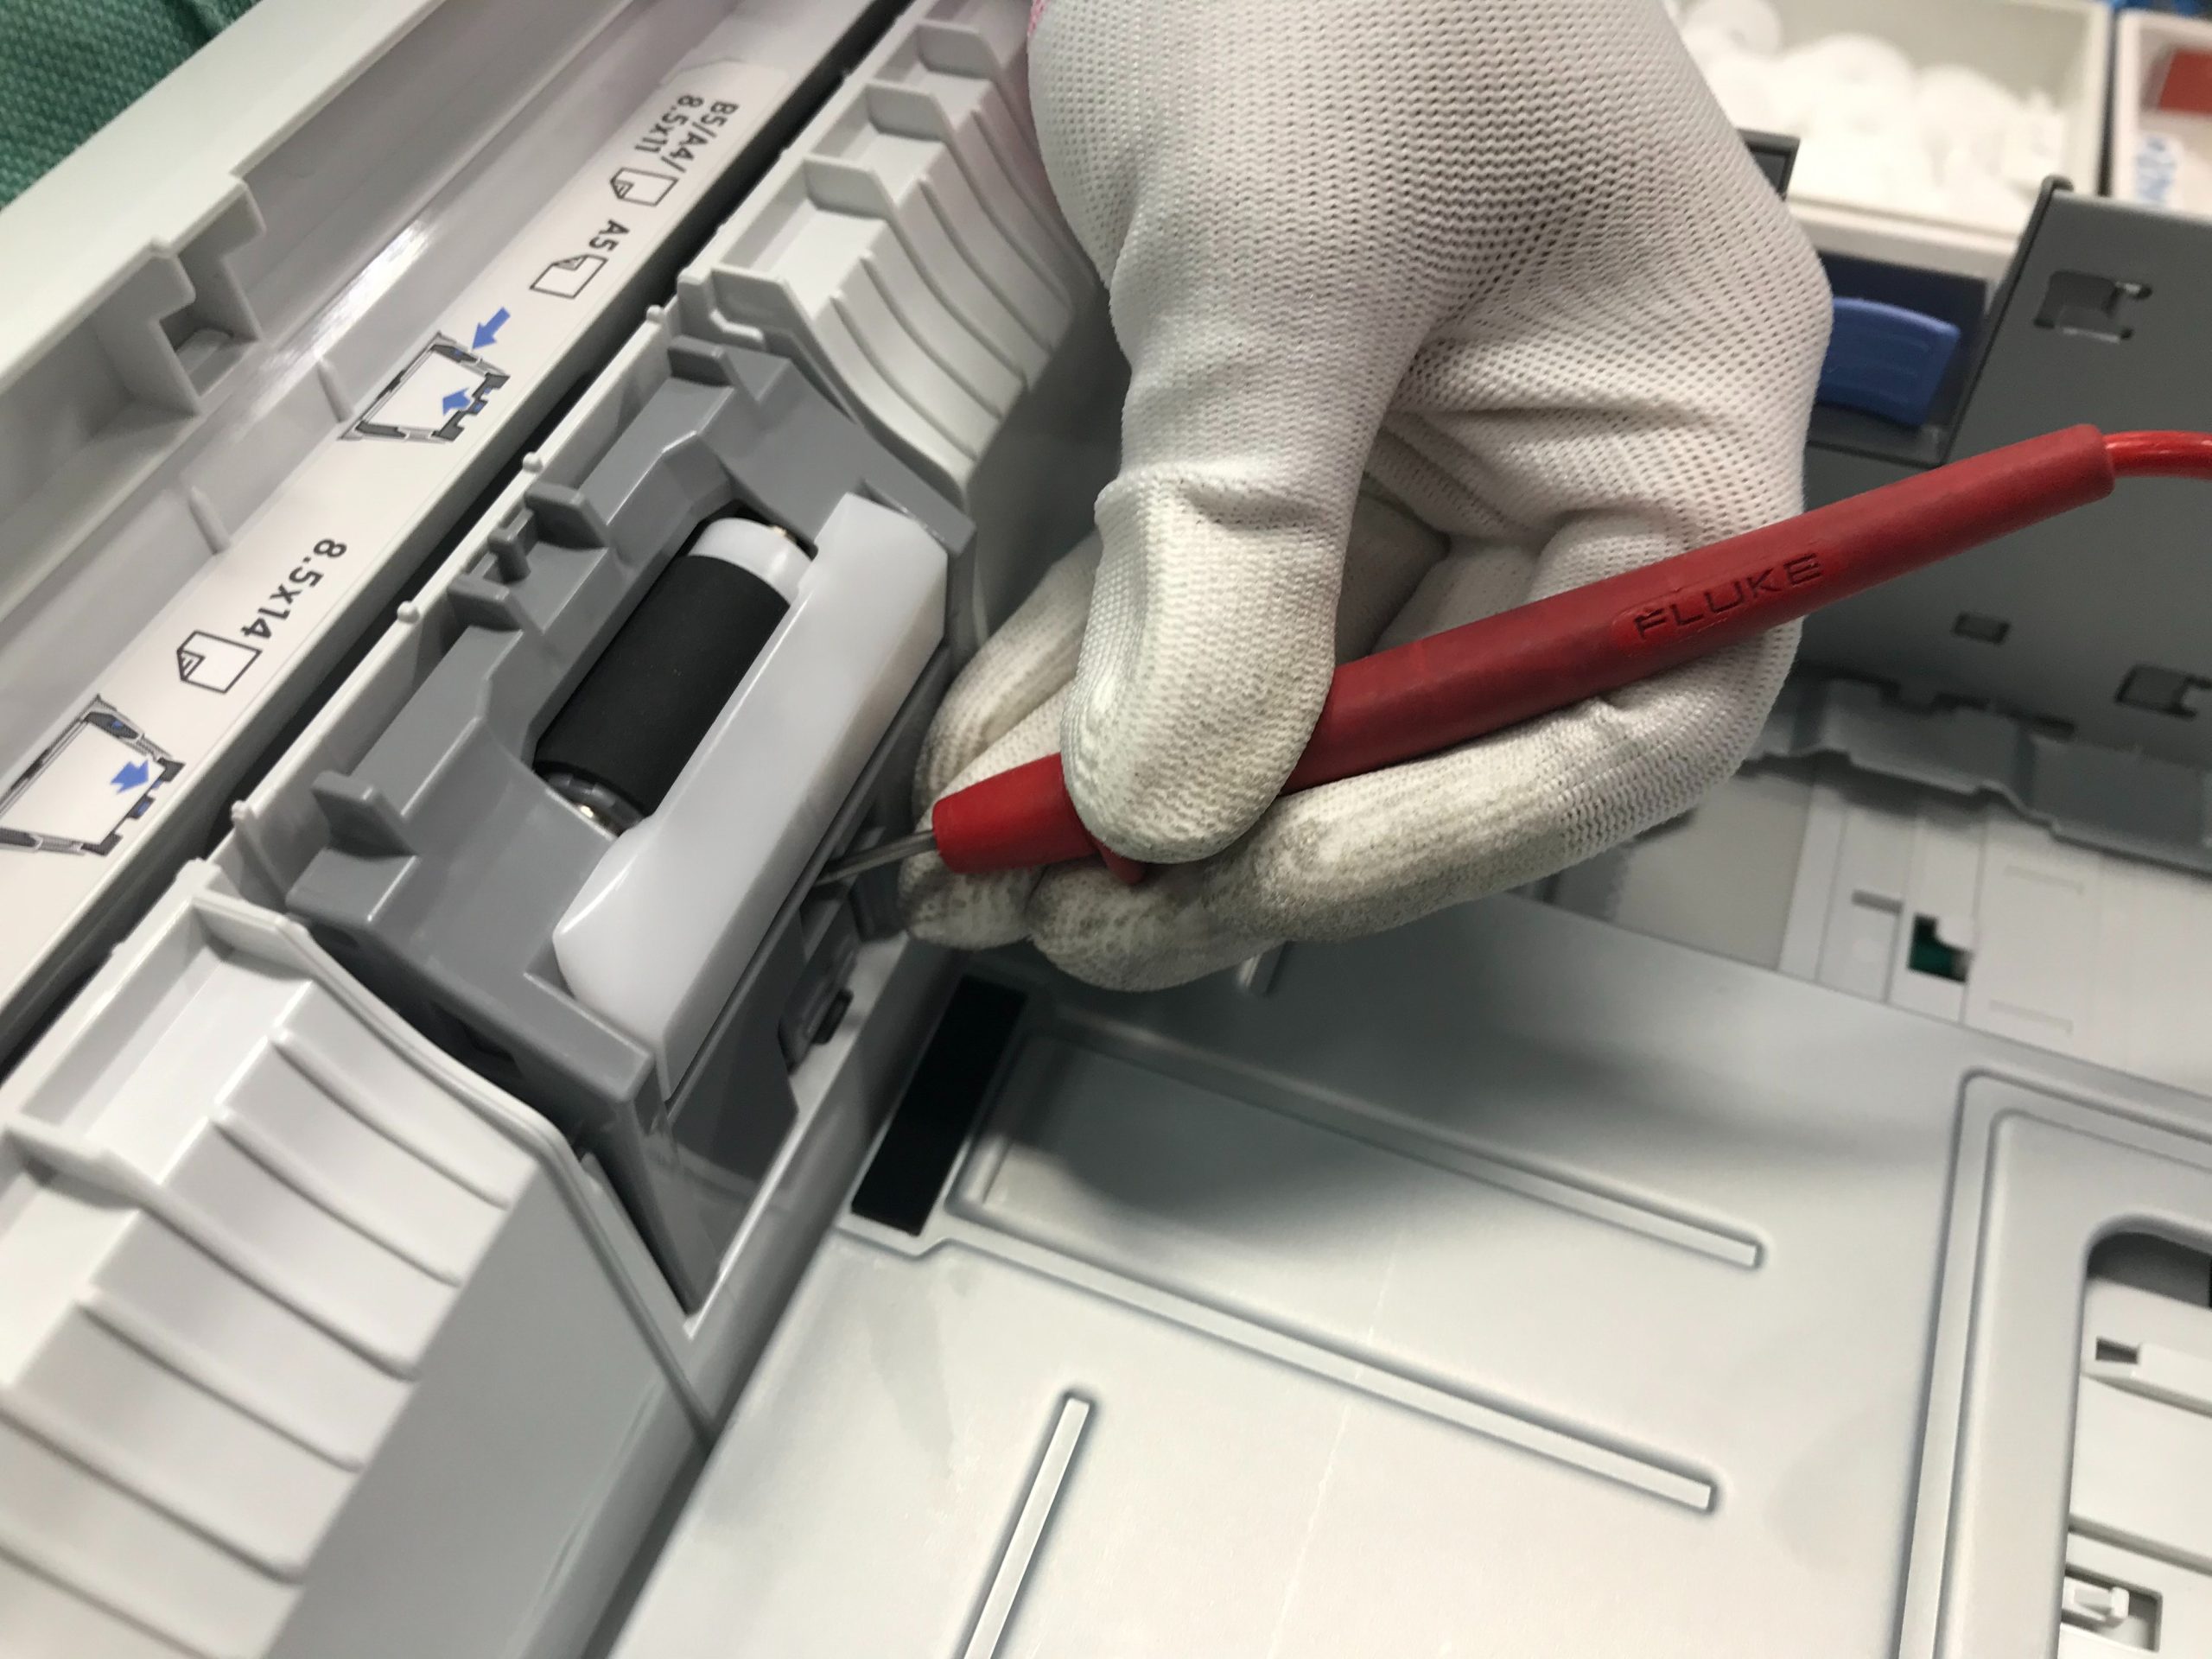 Fix Printer in an Error State